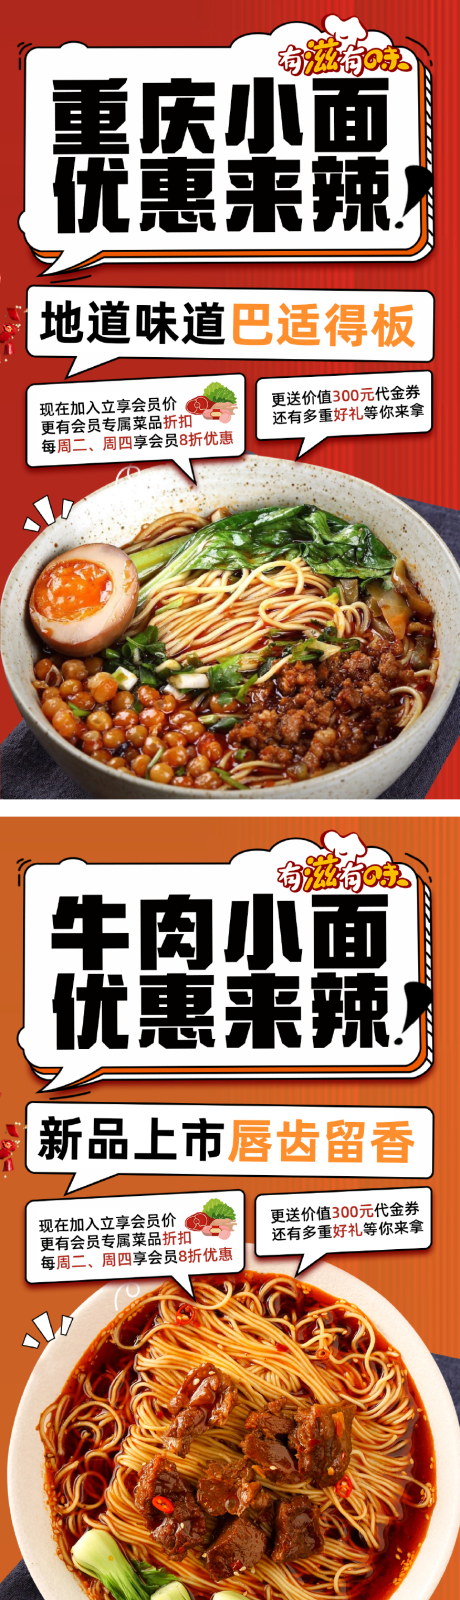 重庆小面牛肉面宣传海报系列